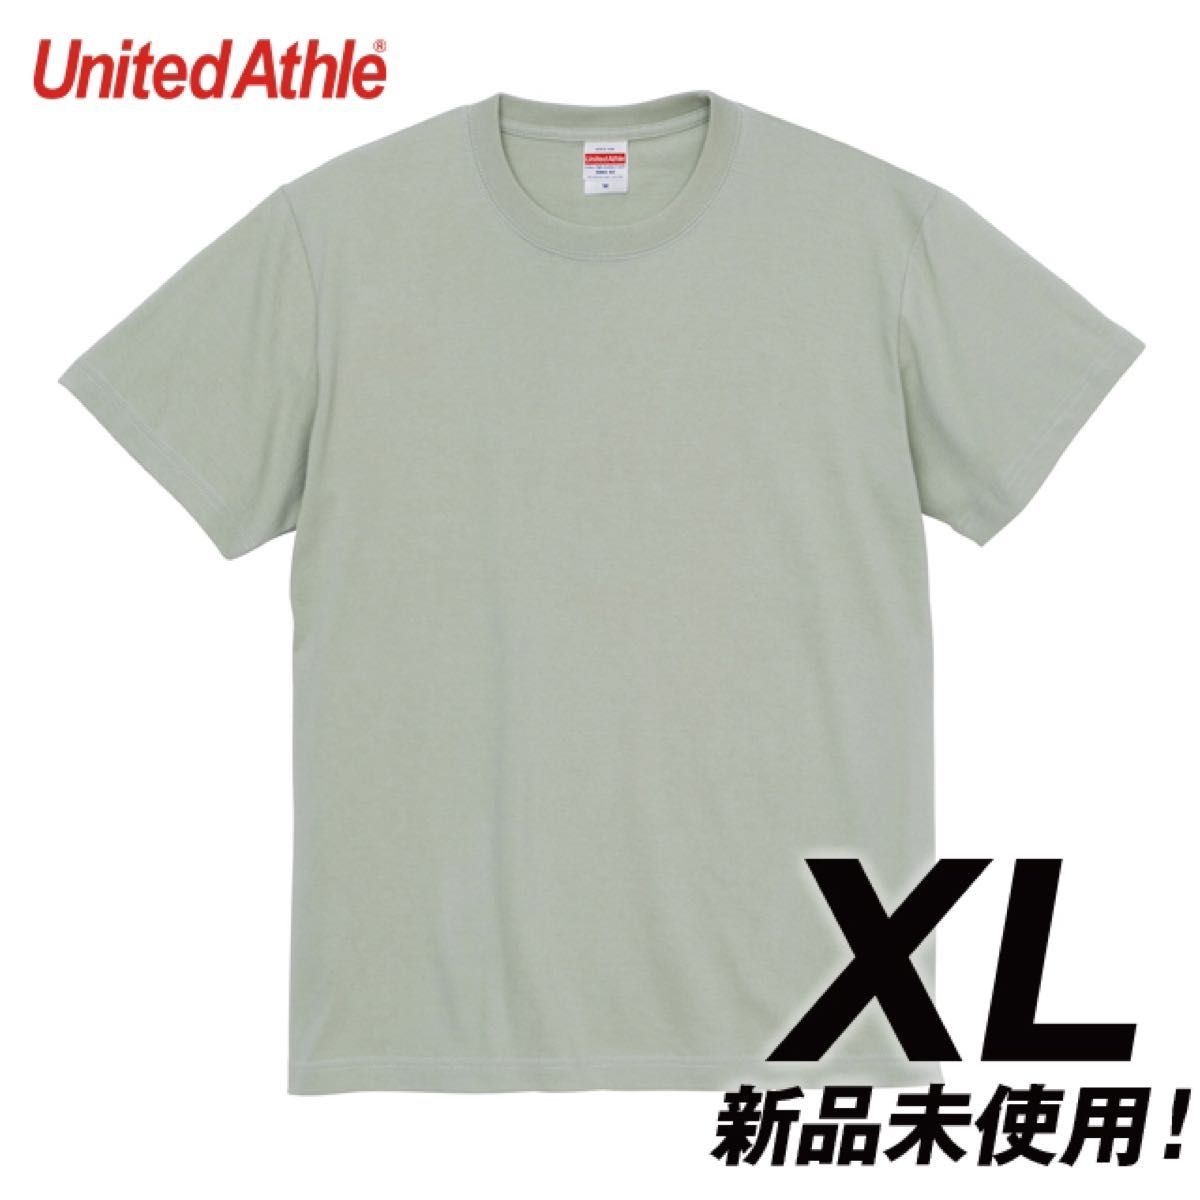 Tシャツ 半袖 5.6オンス ハイクオリティー【5001-01】XL セージグリーン 綿100%